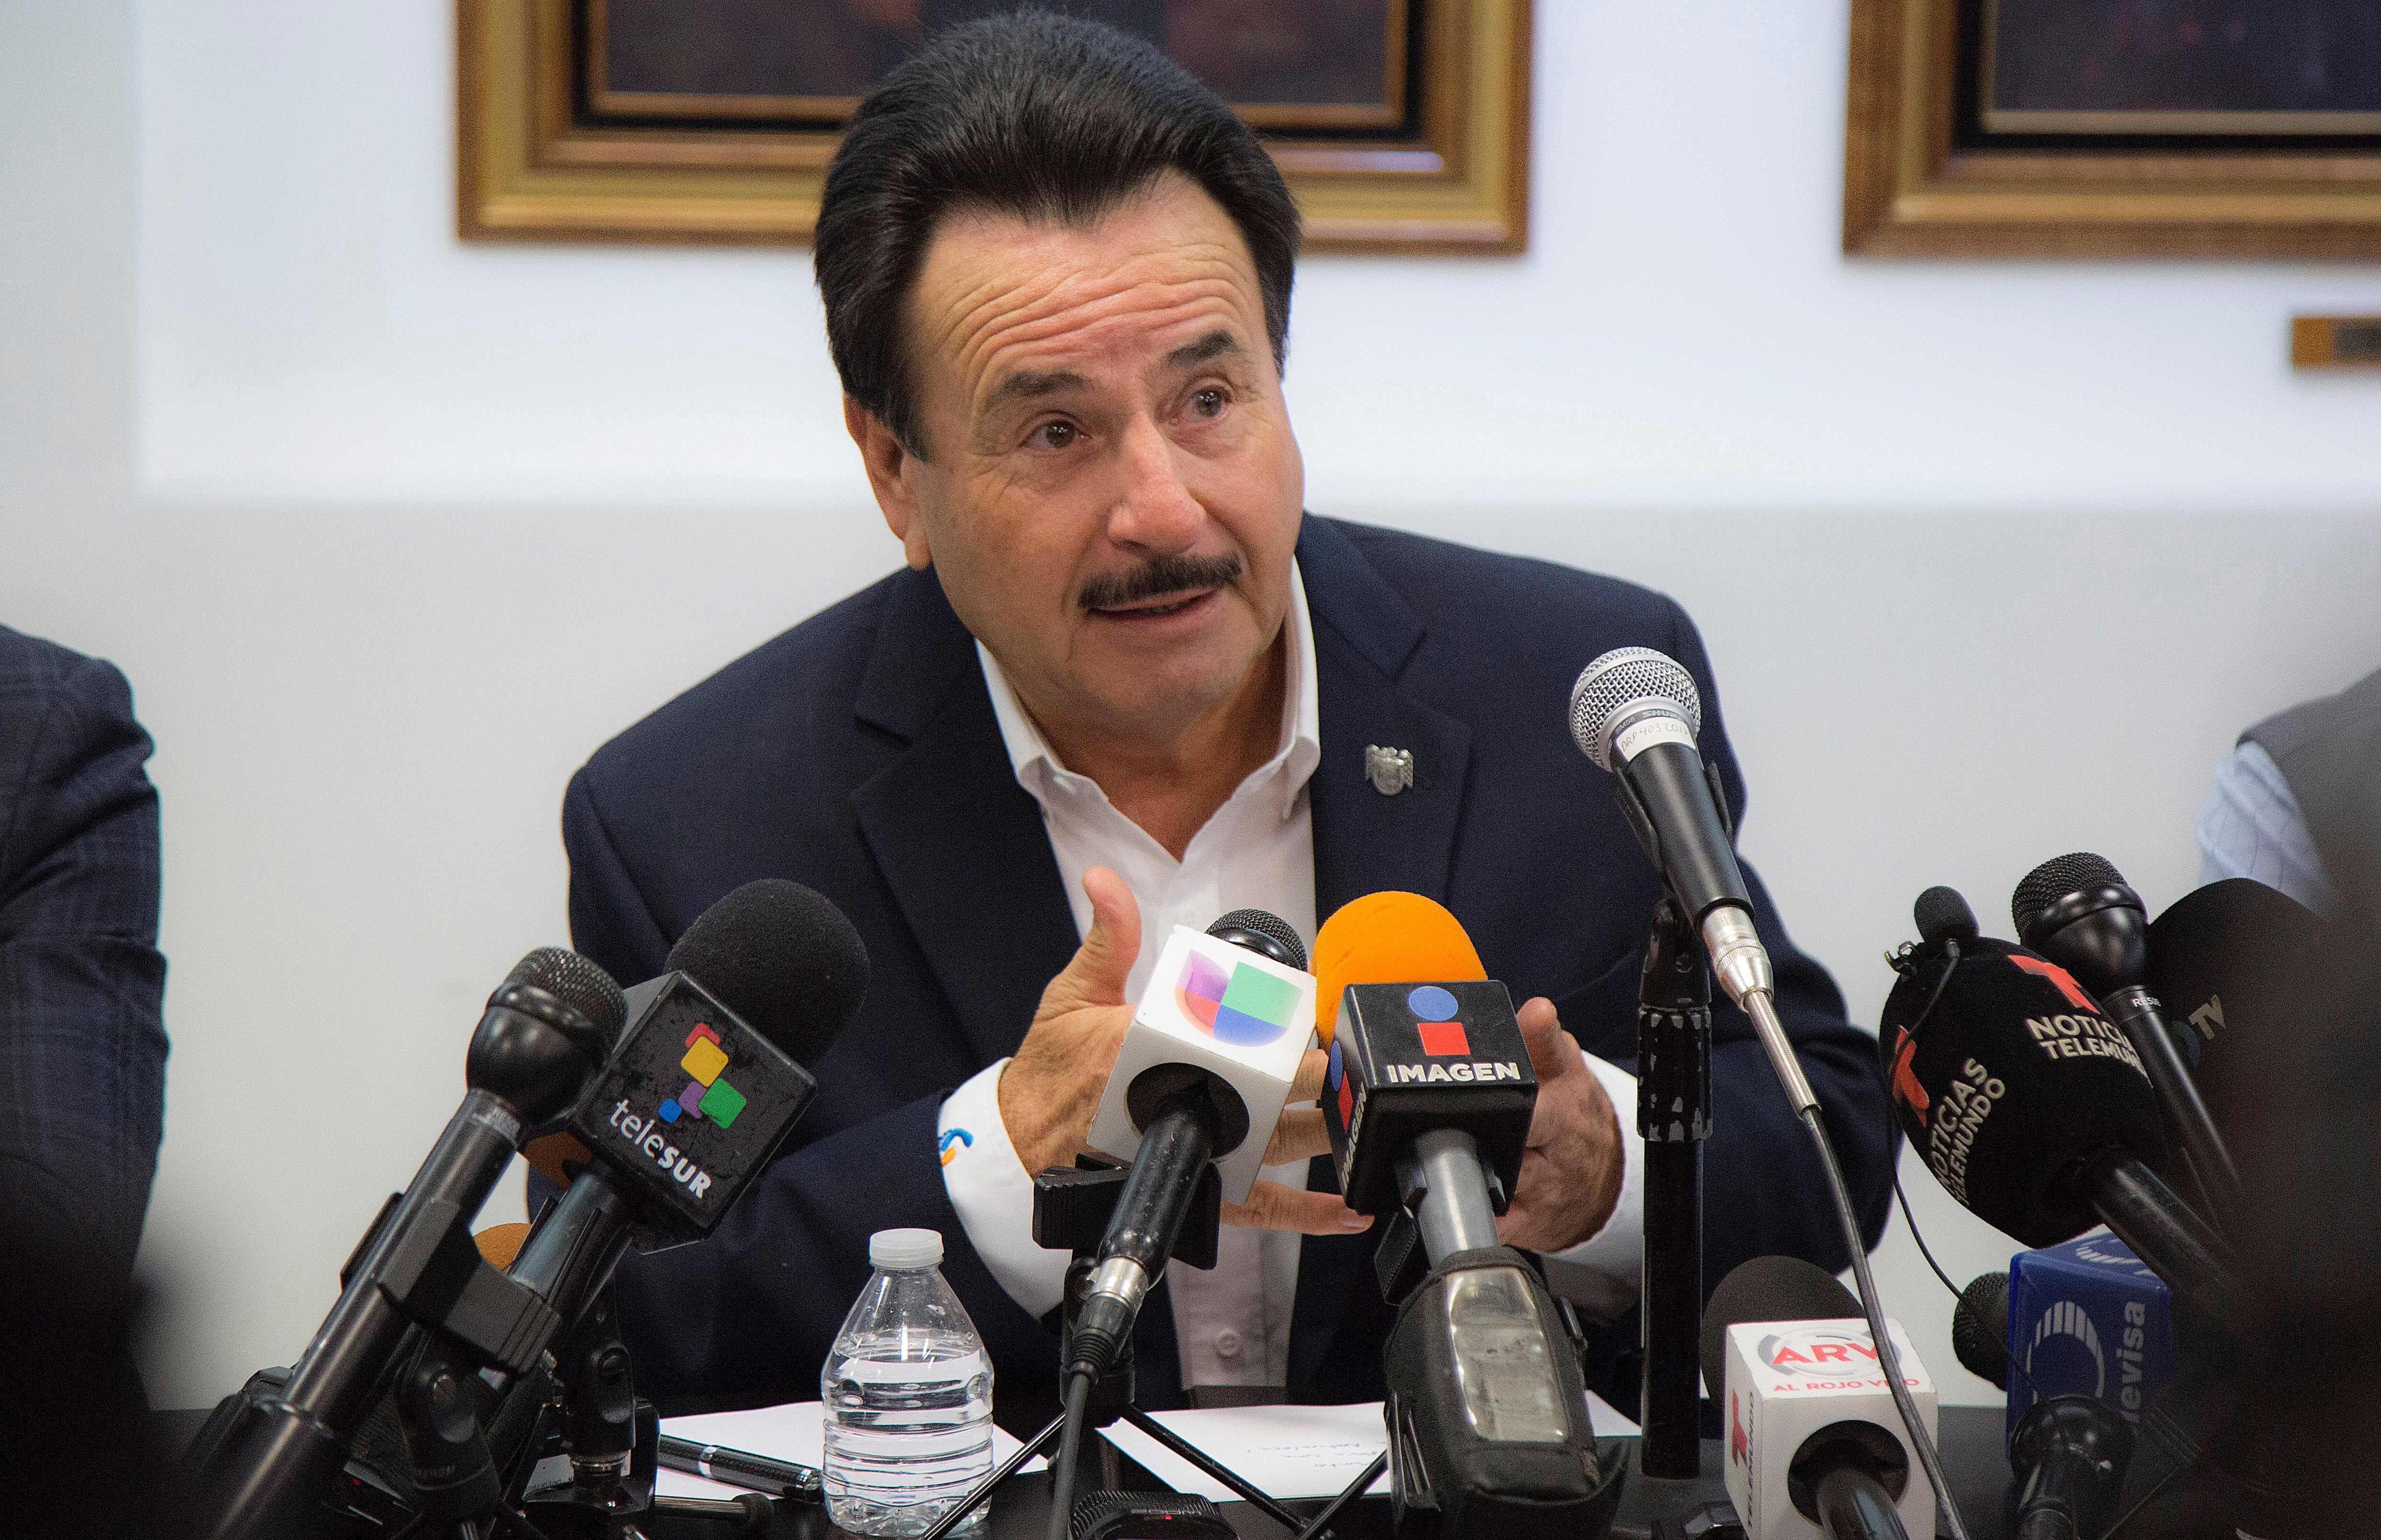  “Los Derechos Humanos son para humanos derechos”: Alcalde de Tijuana sobre migrantes